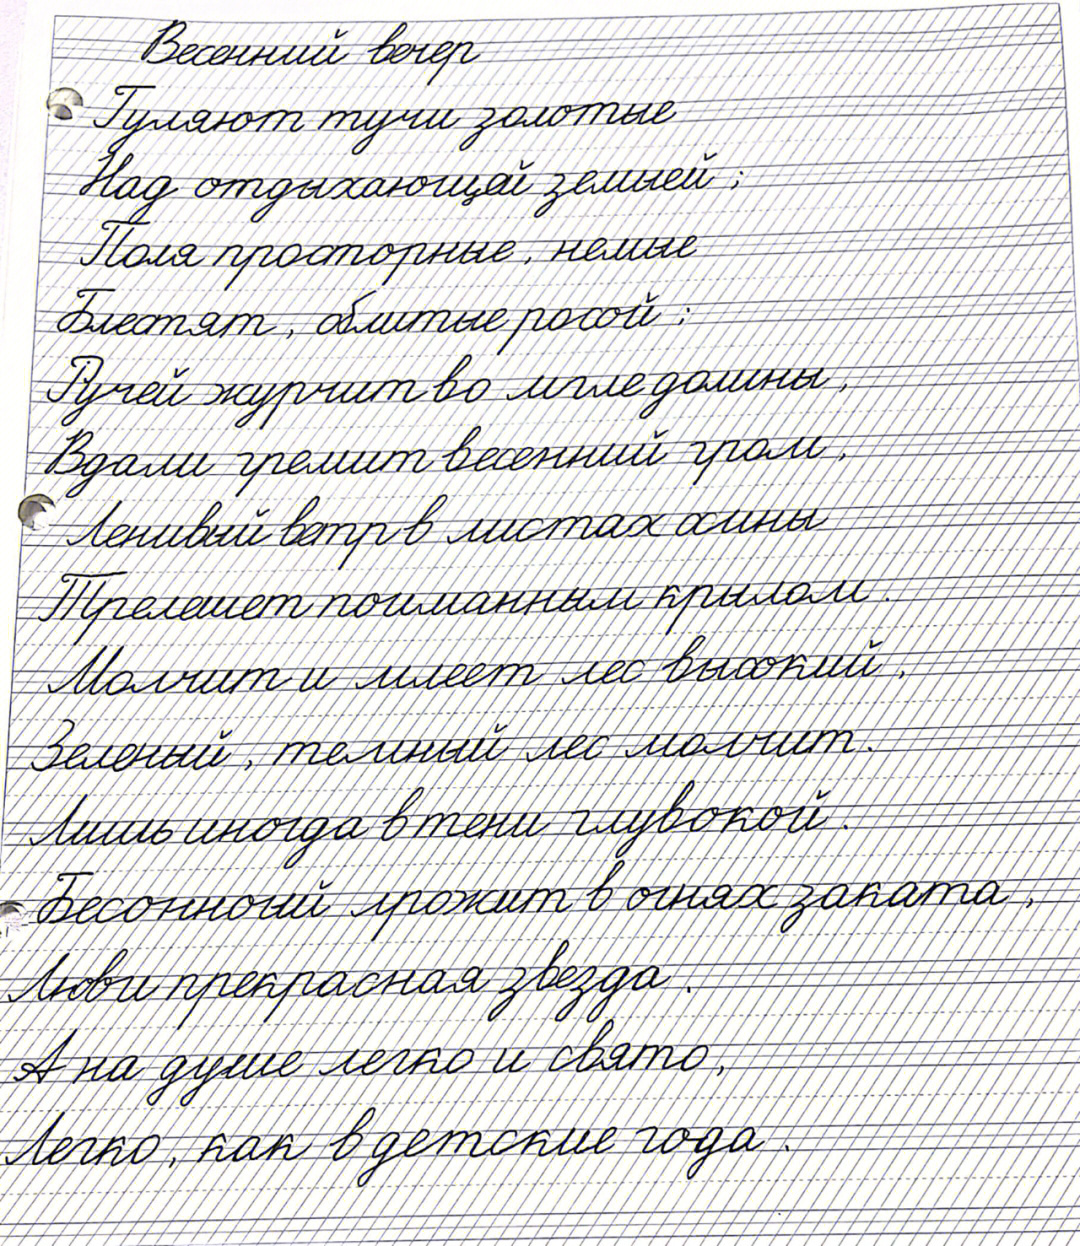 俄语字母及发音手写体图片